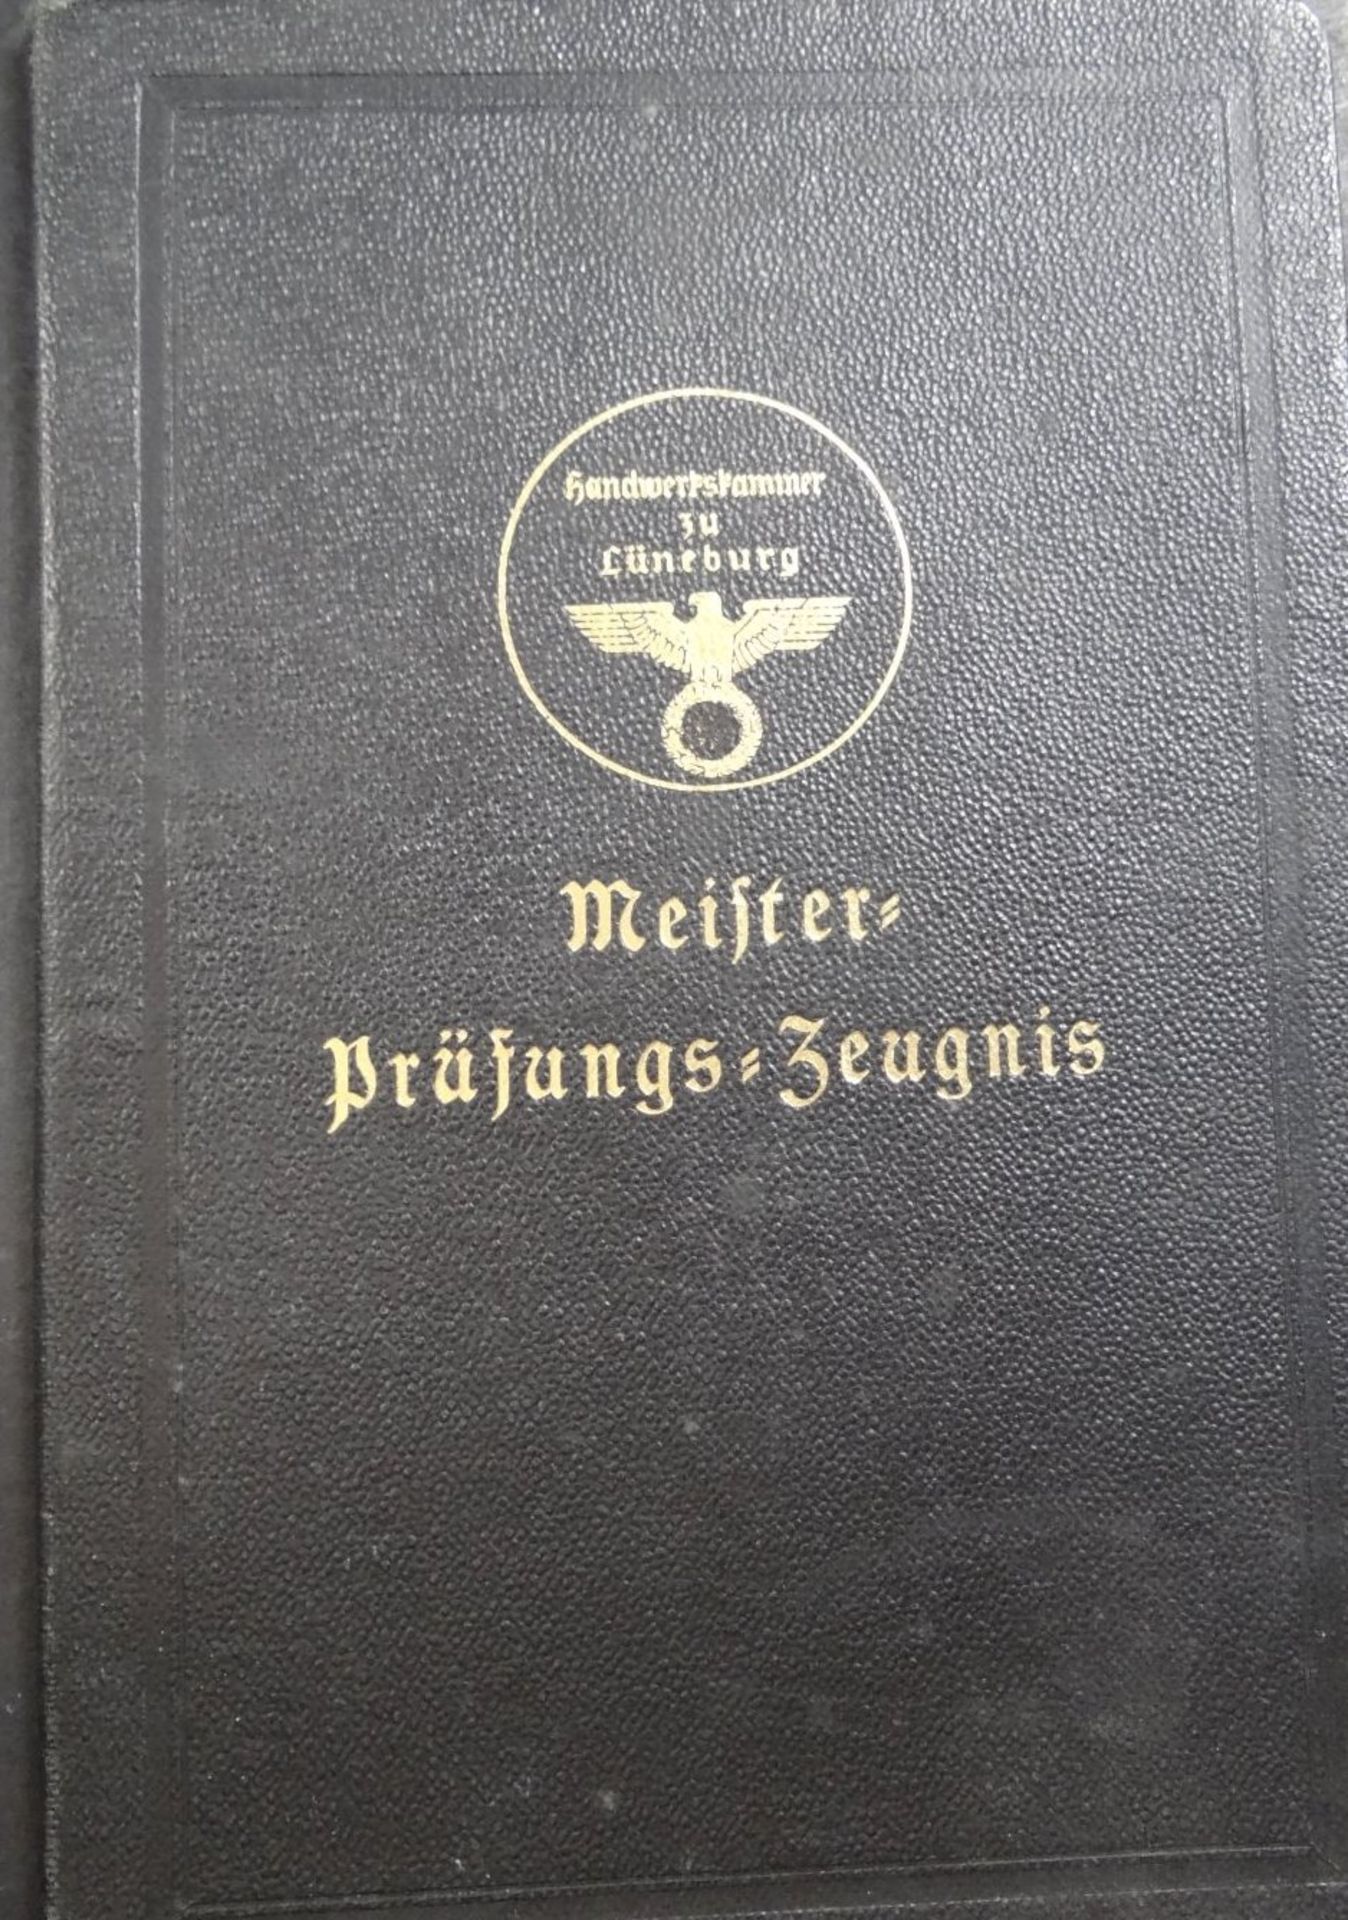 Lot Papiere, Meisterbrief, Wander-Buch, Handwerskammer, Reichsmusikkammer etc., ca. 1930-1945 - Bild 5 aus 10